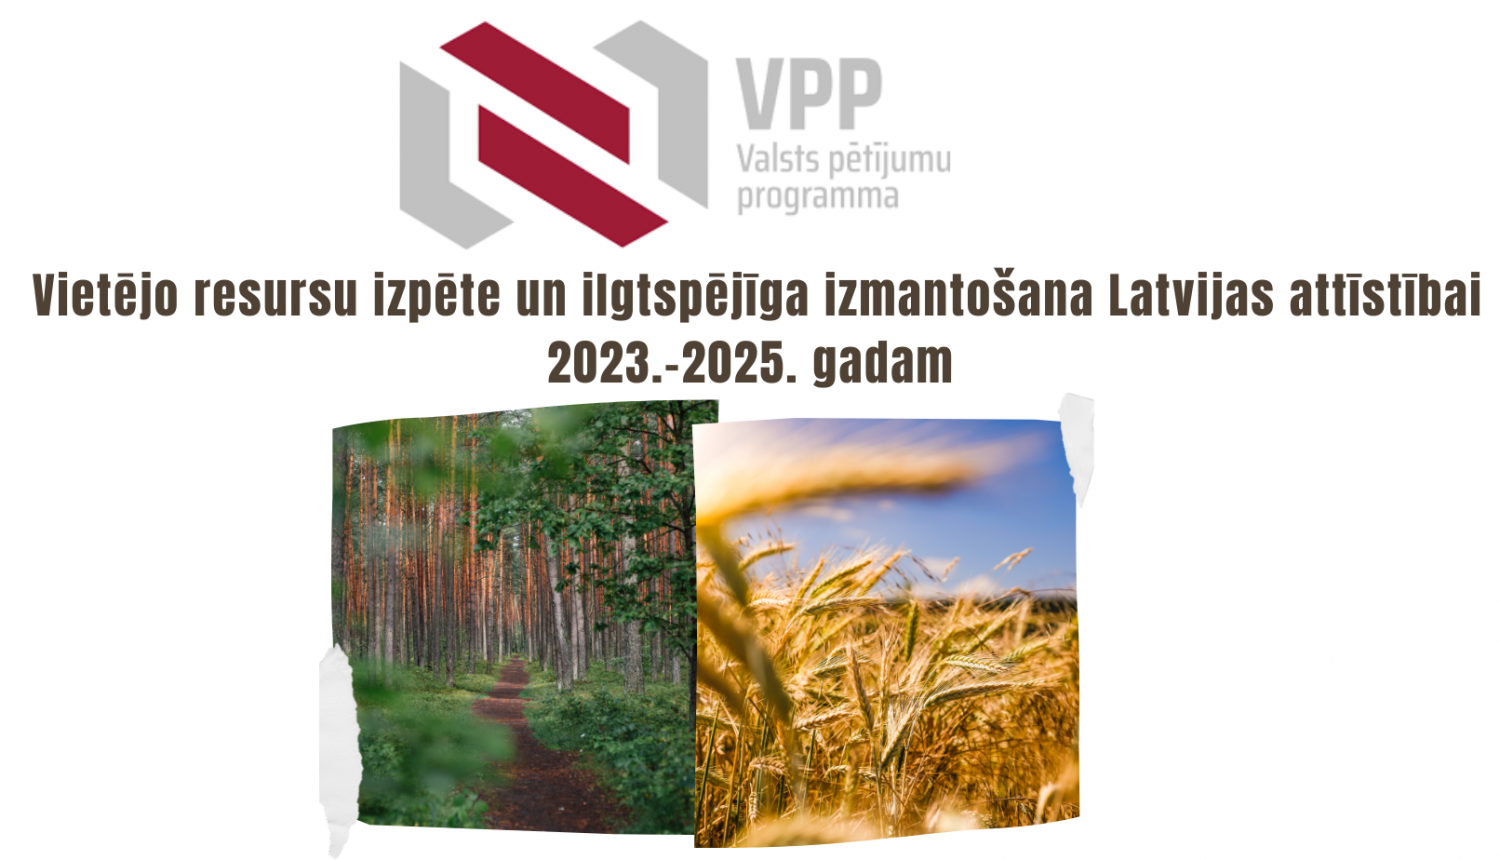 Vietējo resursu izpēte un ilgtspējīga izmantošana Latvijas attīstībai 2023.-2025. gadam” galvenie nosacījumii